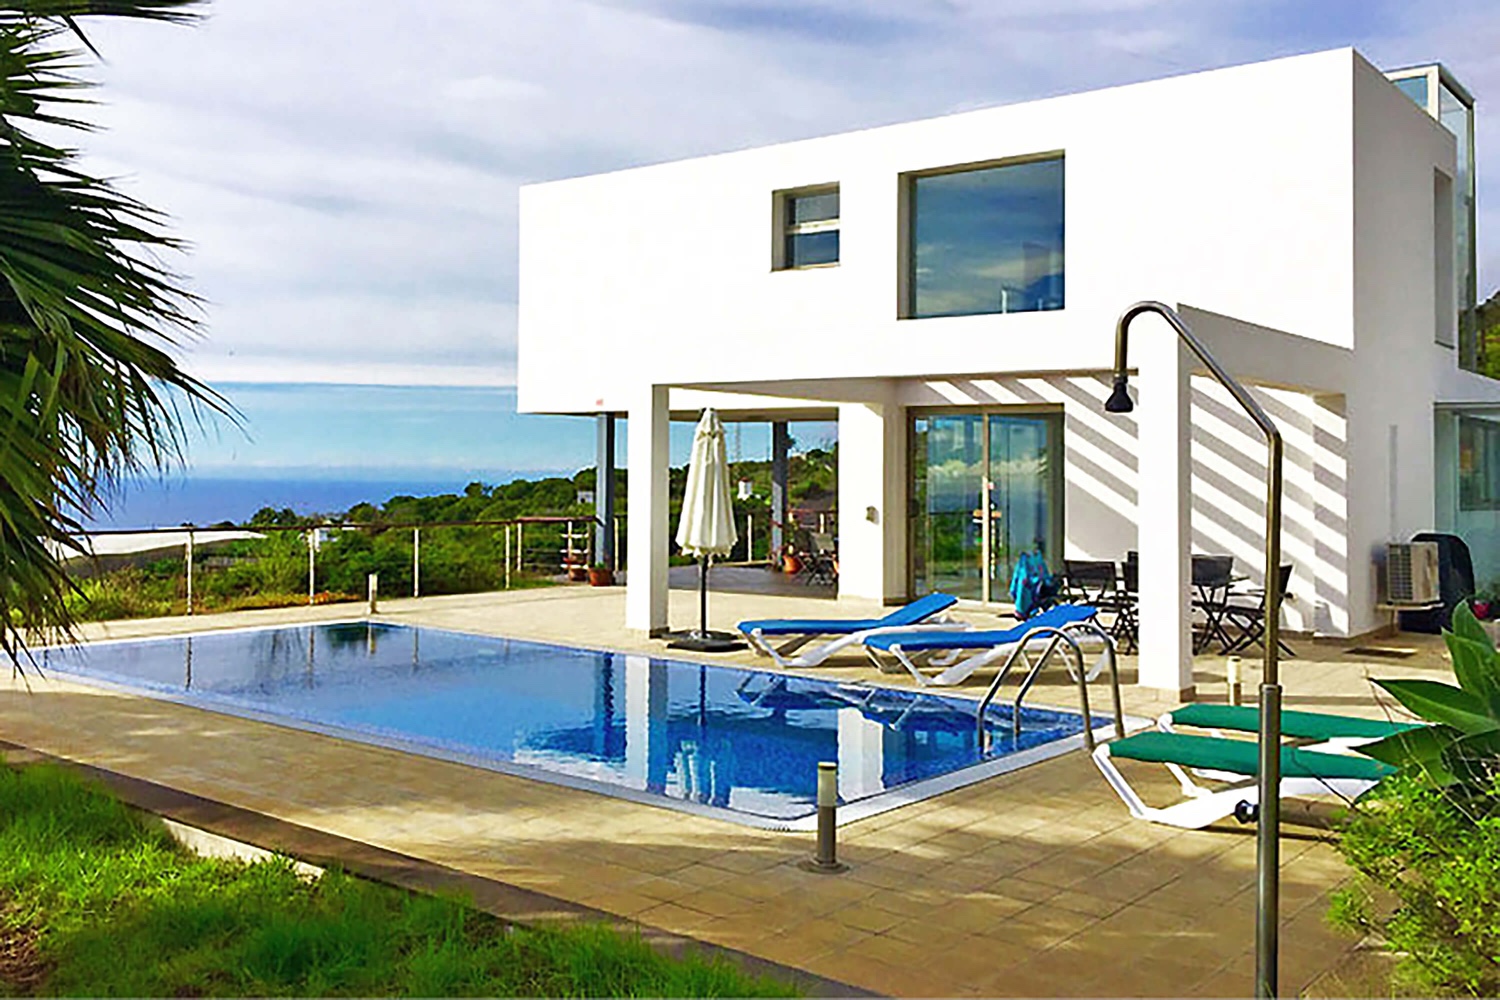 Luxuriöses Ferienhaus zur Miete auf La Palma mit moderner Architektur mit großem Pool und wunderschönem Panoramablick auf das Meer